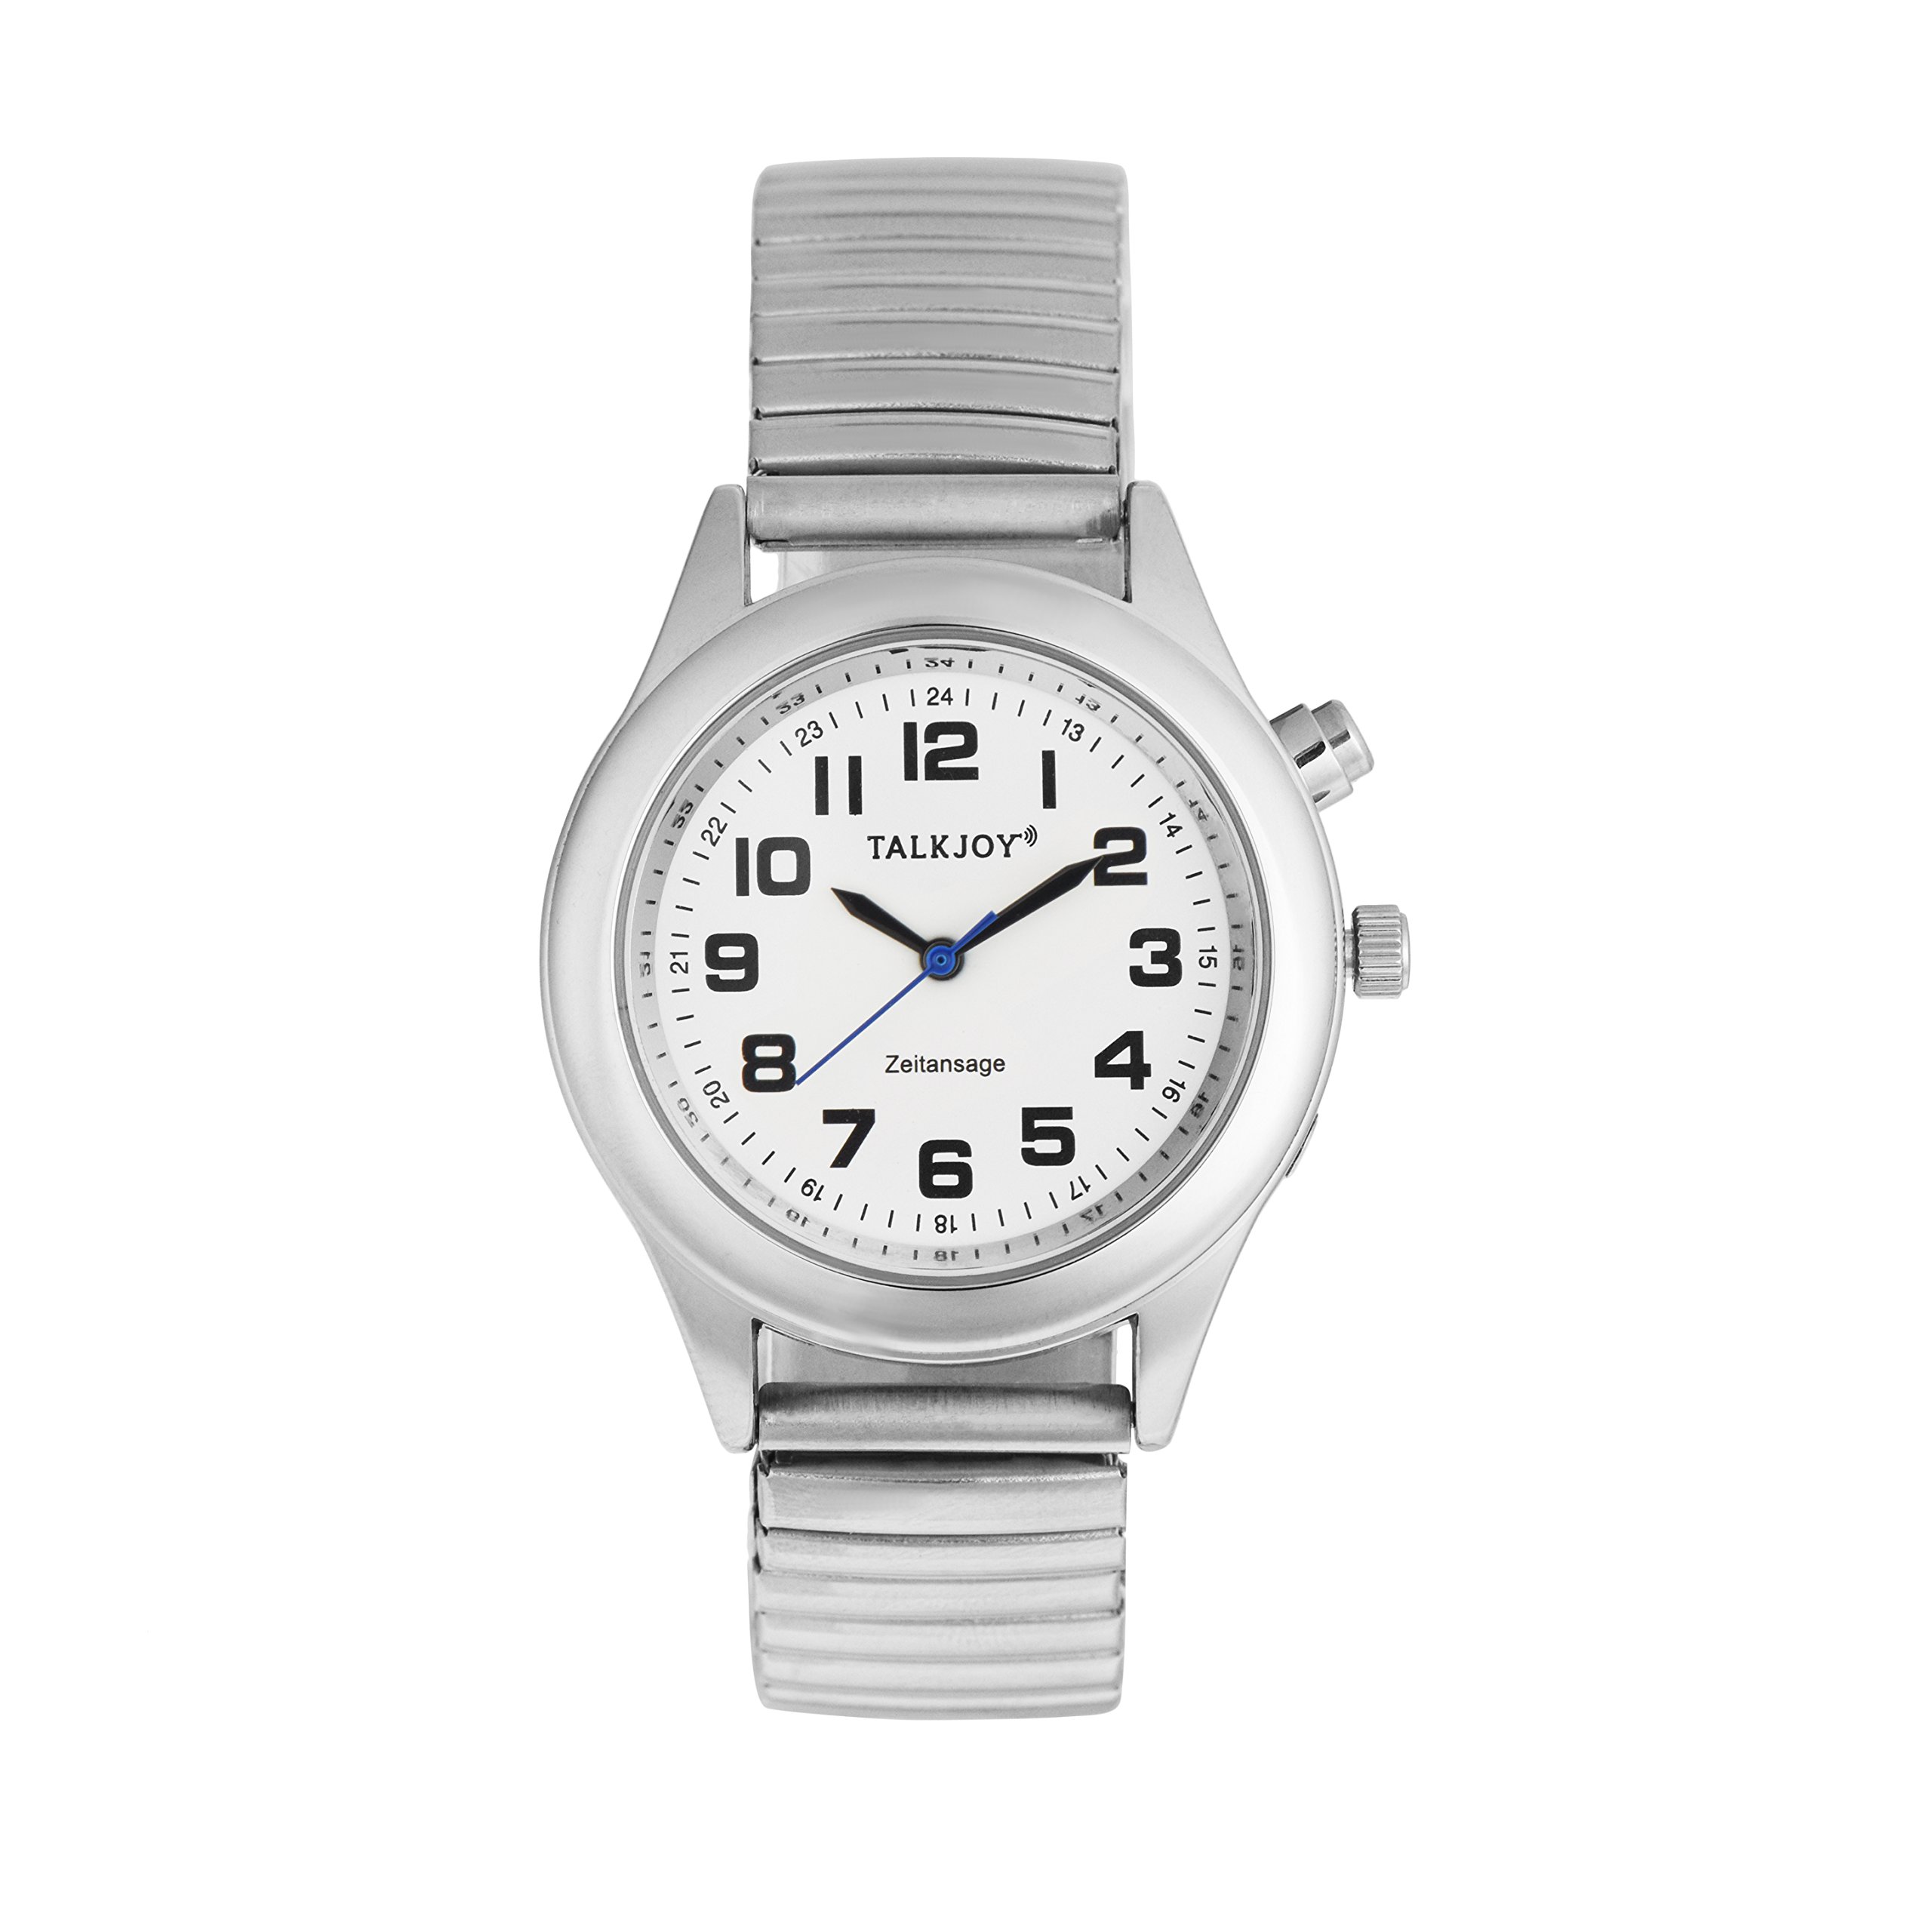 TalkJoy Profi Damen Sprechende Armbanduhr Silber Uhr Senioren Blindenuhr Sprachfunktion